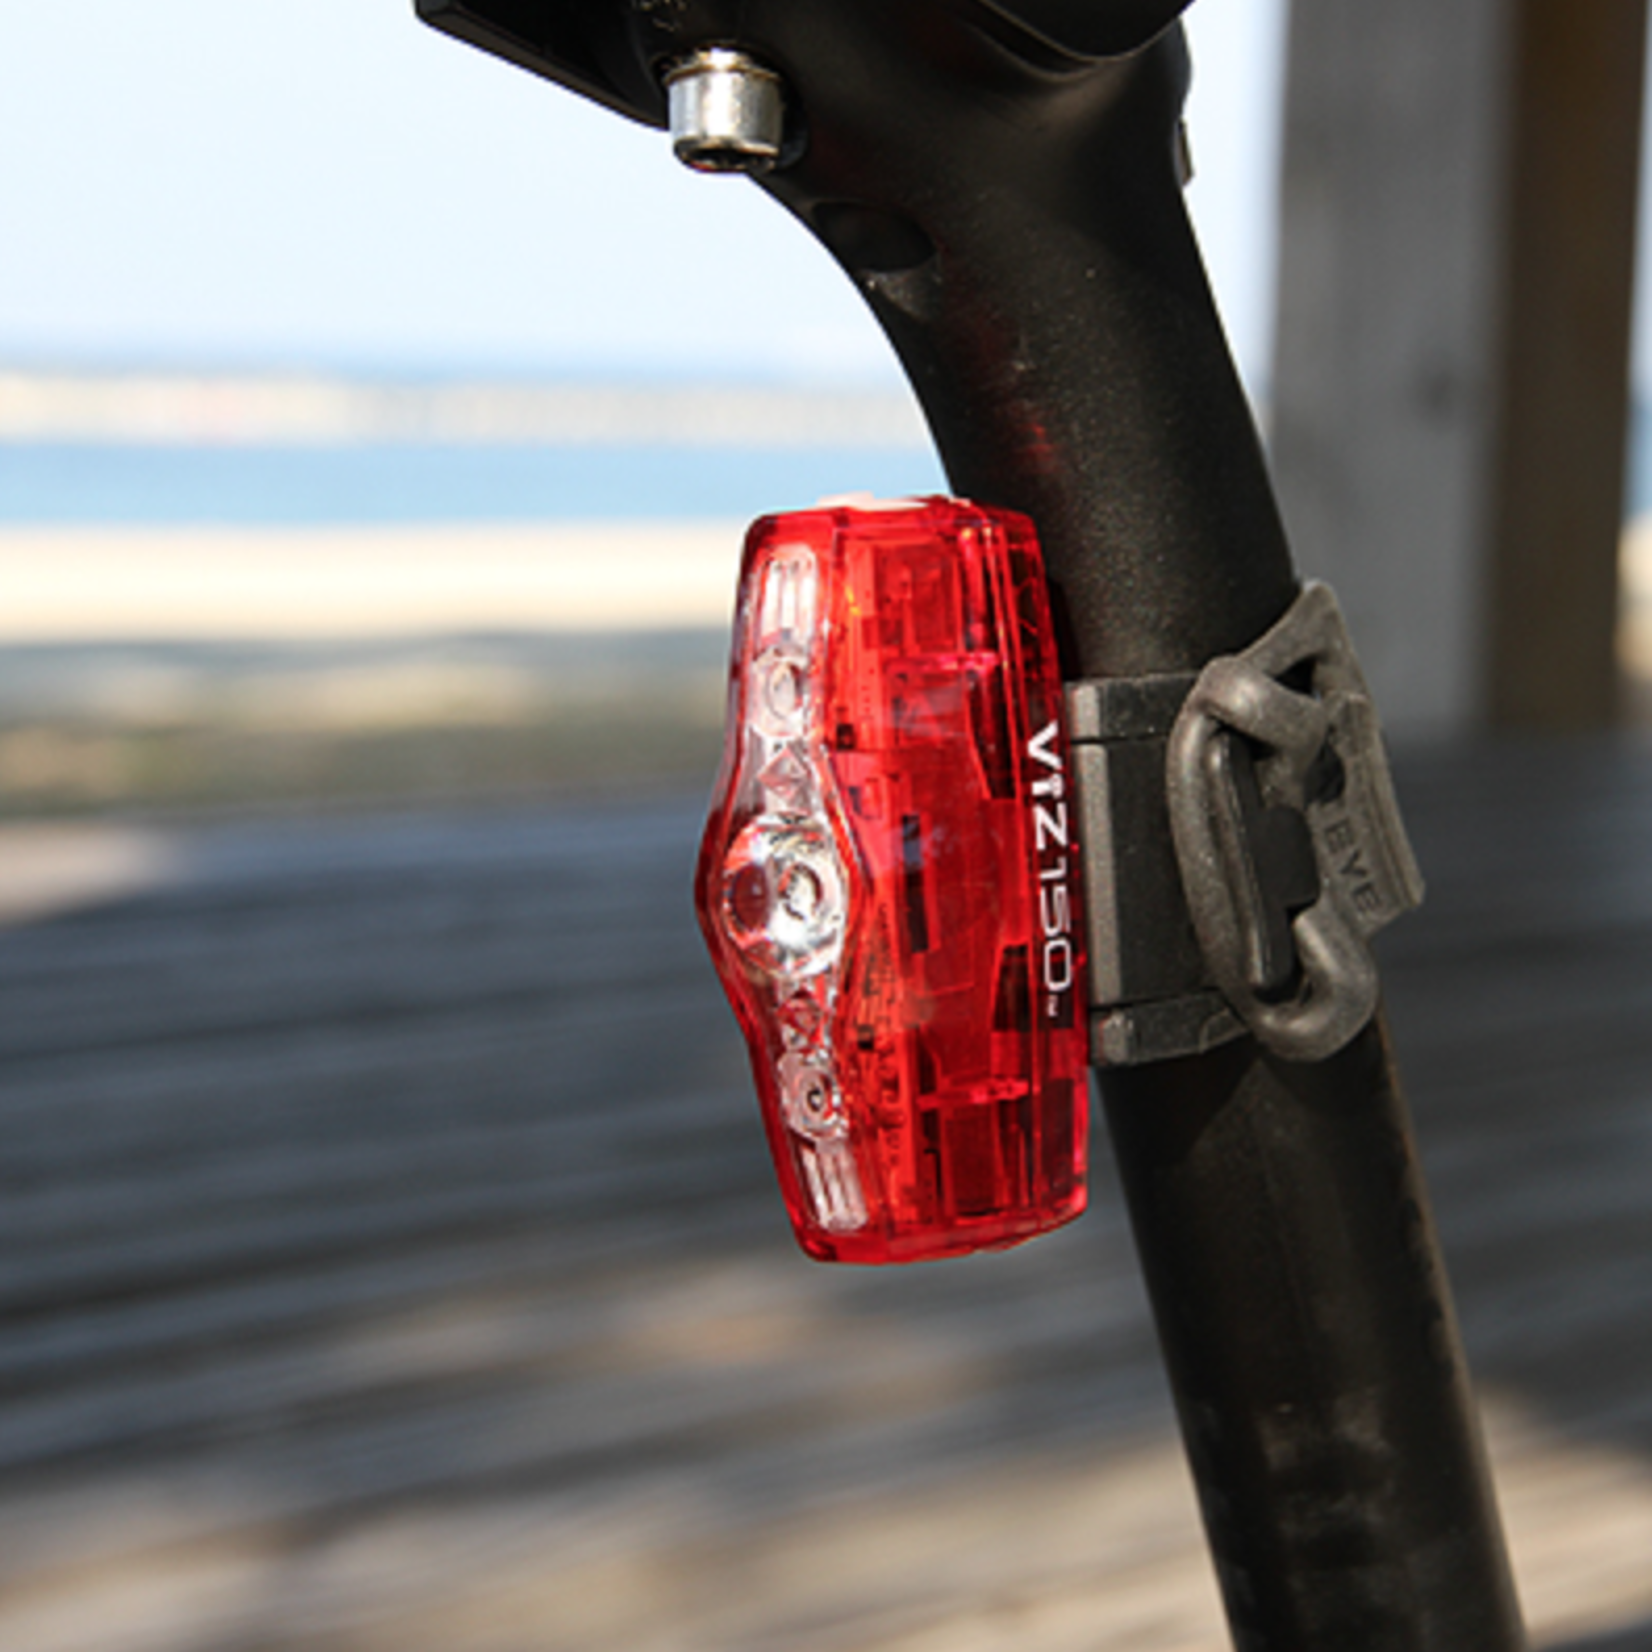 Cateye VIZ 150 Rear Bike Light